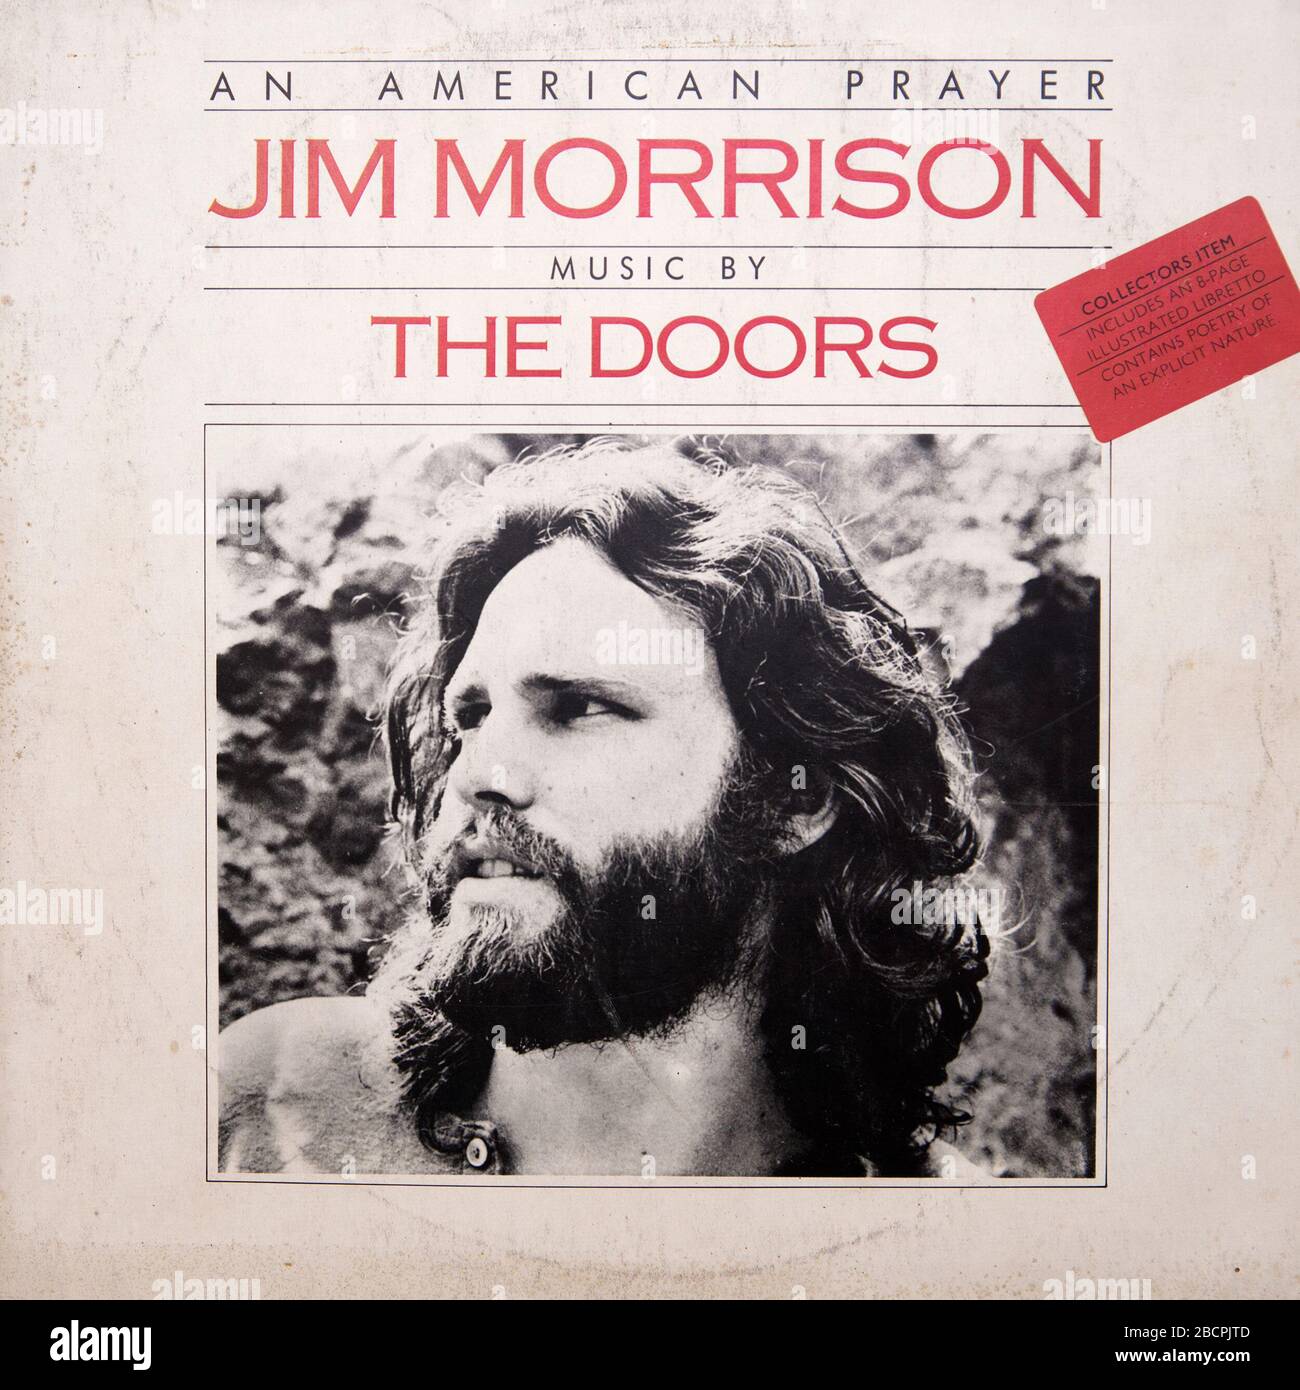 BELGRADO, SERBIA - 23 OTTOBRE 2019: Copertina di un album in vinile di preghiera americano di Jim Morrison e The Doors. E' l'ultimo album in studio della Doors Foto Stock